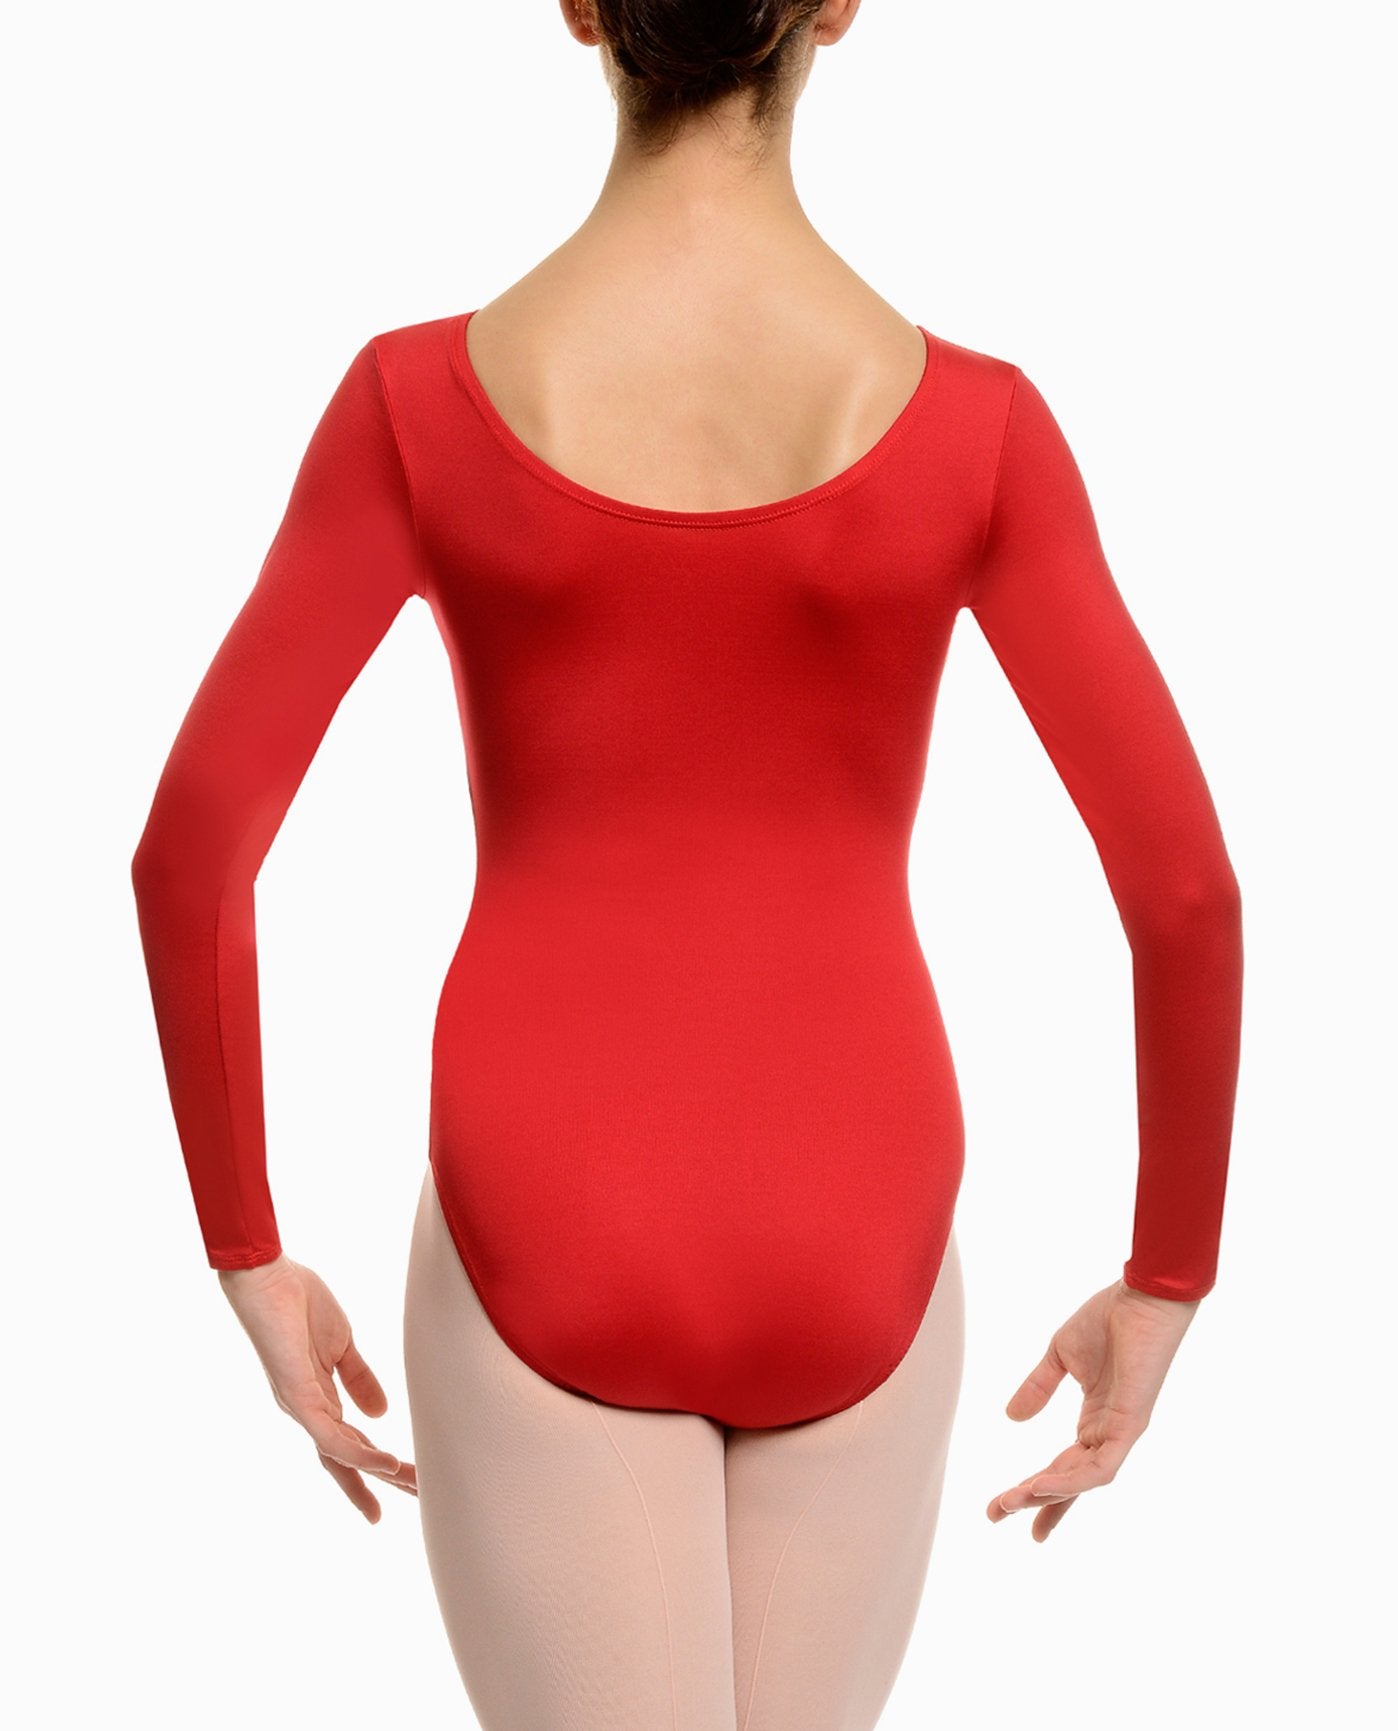 Scuba Girl Red Bodysuit 